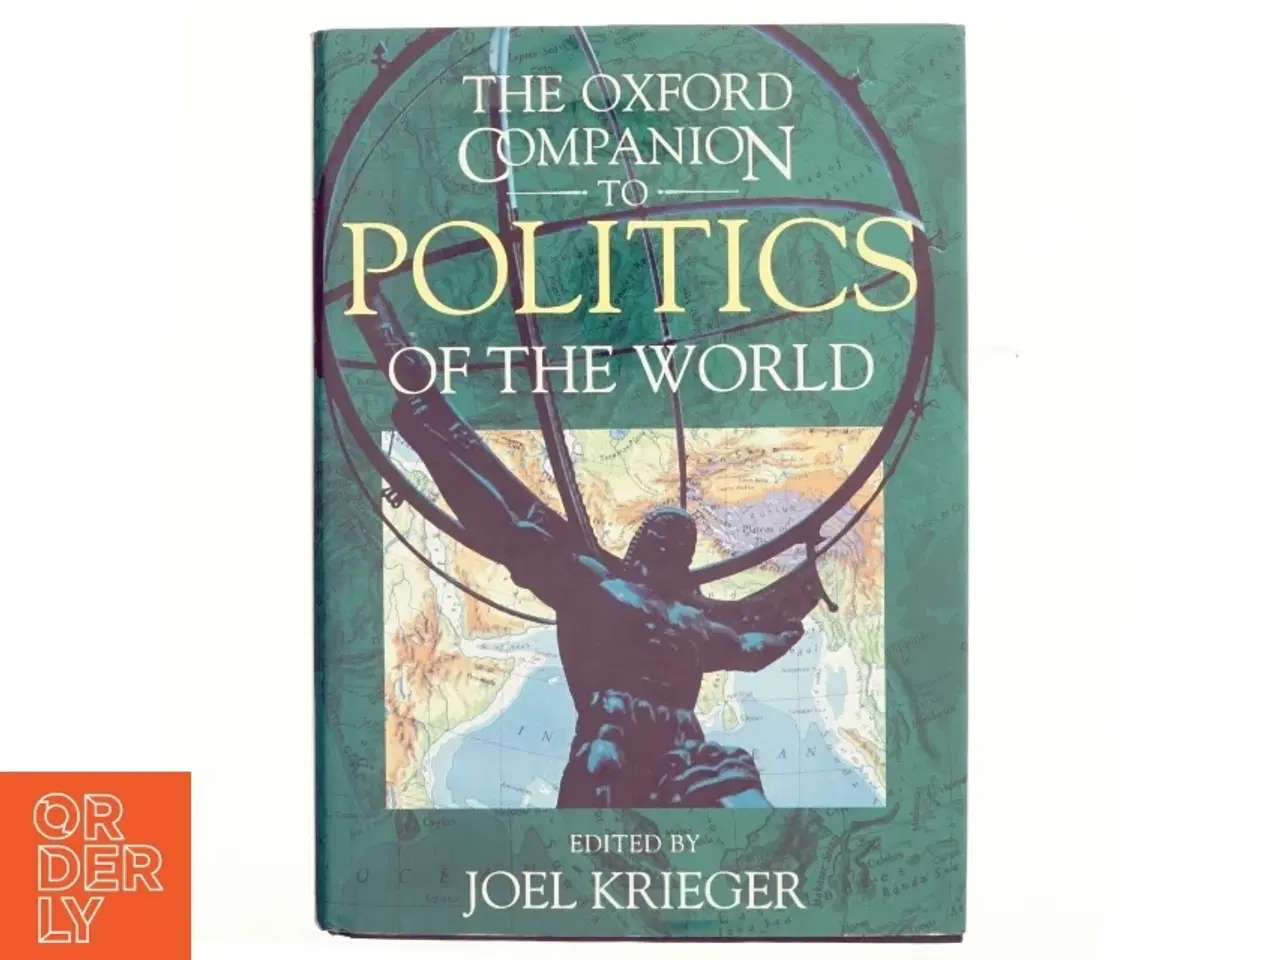 Billede 1 - The Oxford companion to politics of the world af Joel Krieger (Bog)